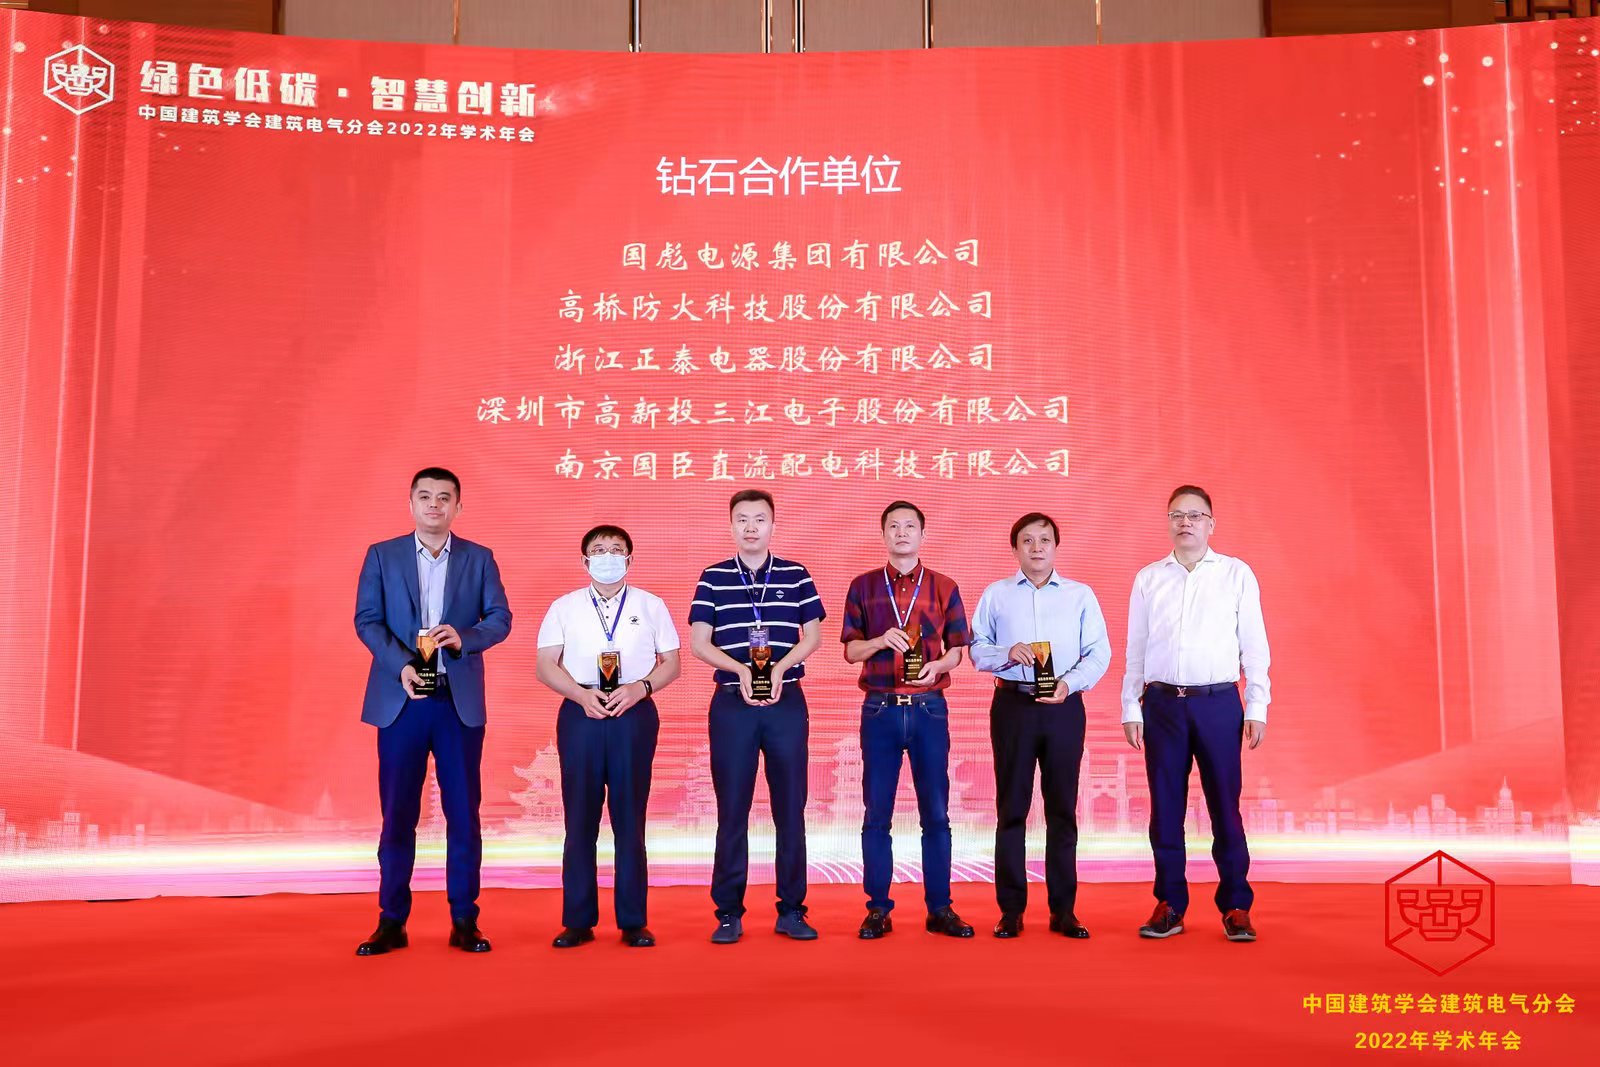 bwin必赢唯一官方网站受邀出席中国建筑学会建筑电气分会2022年学术年会